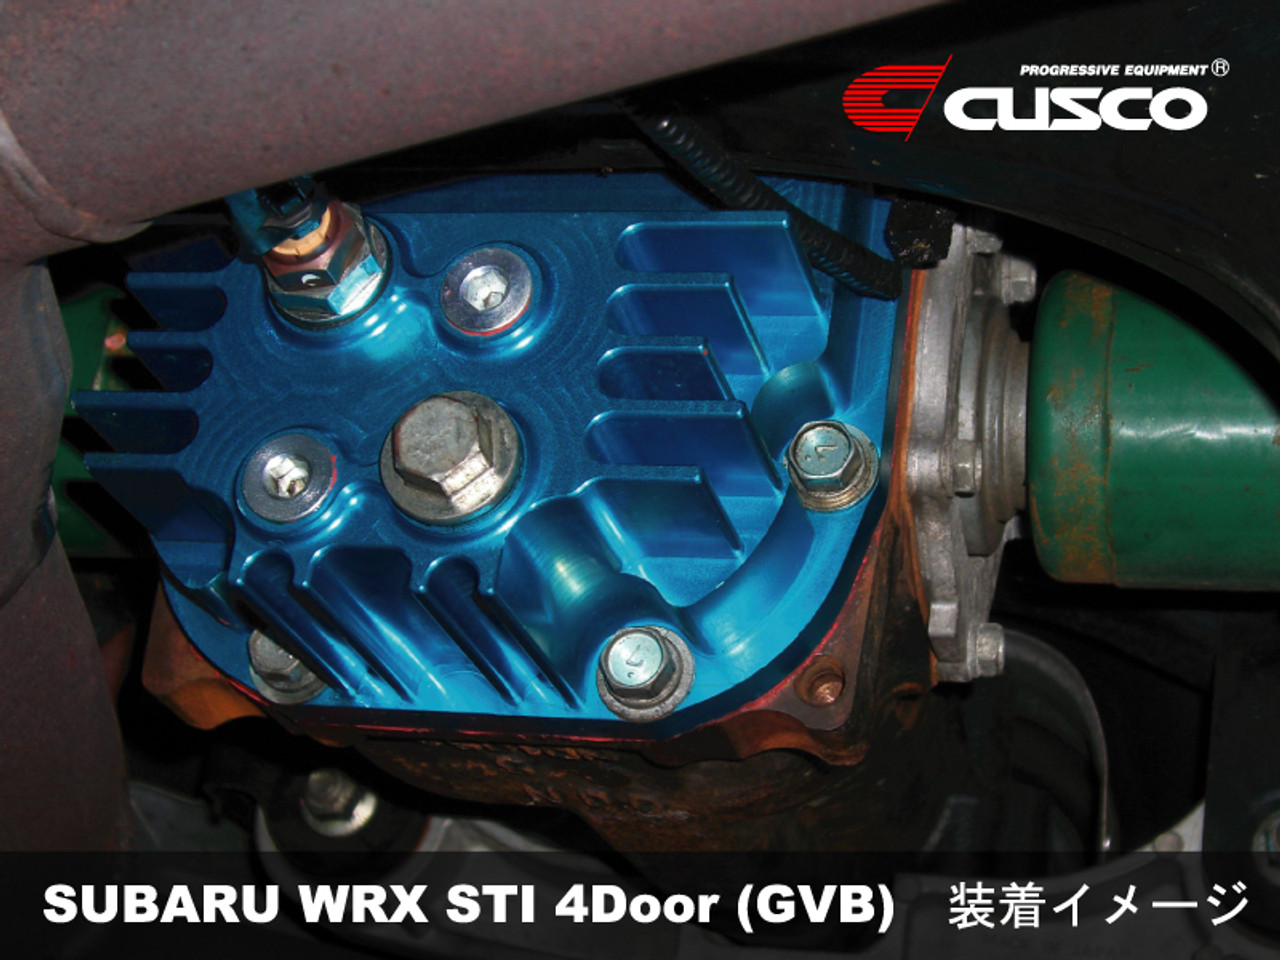 06 07 Subaru Impreza WRX Rear Differential Cover Plate Diff Carrier 2006 2007